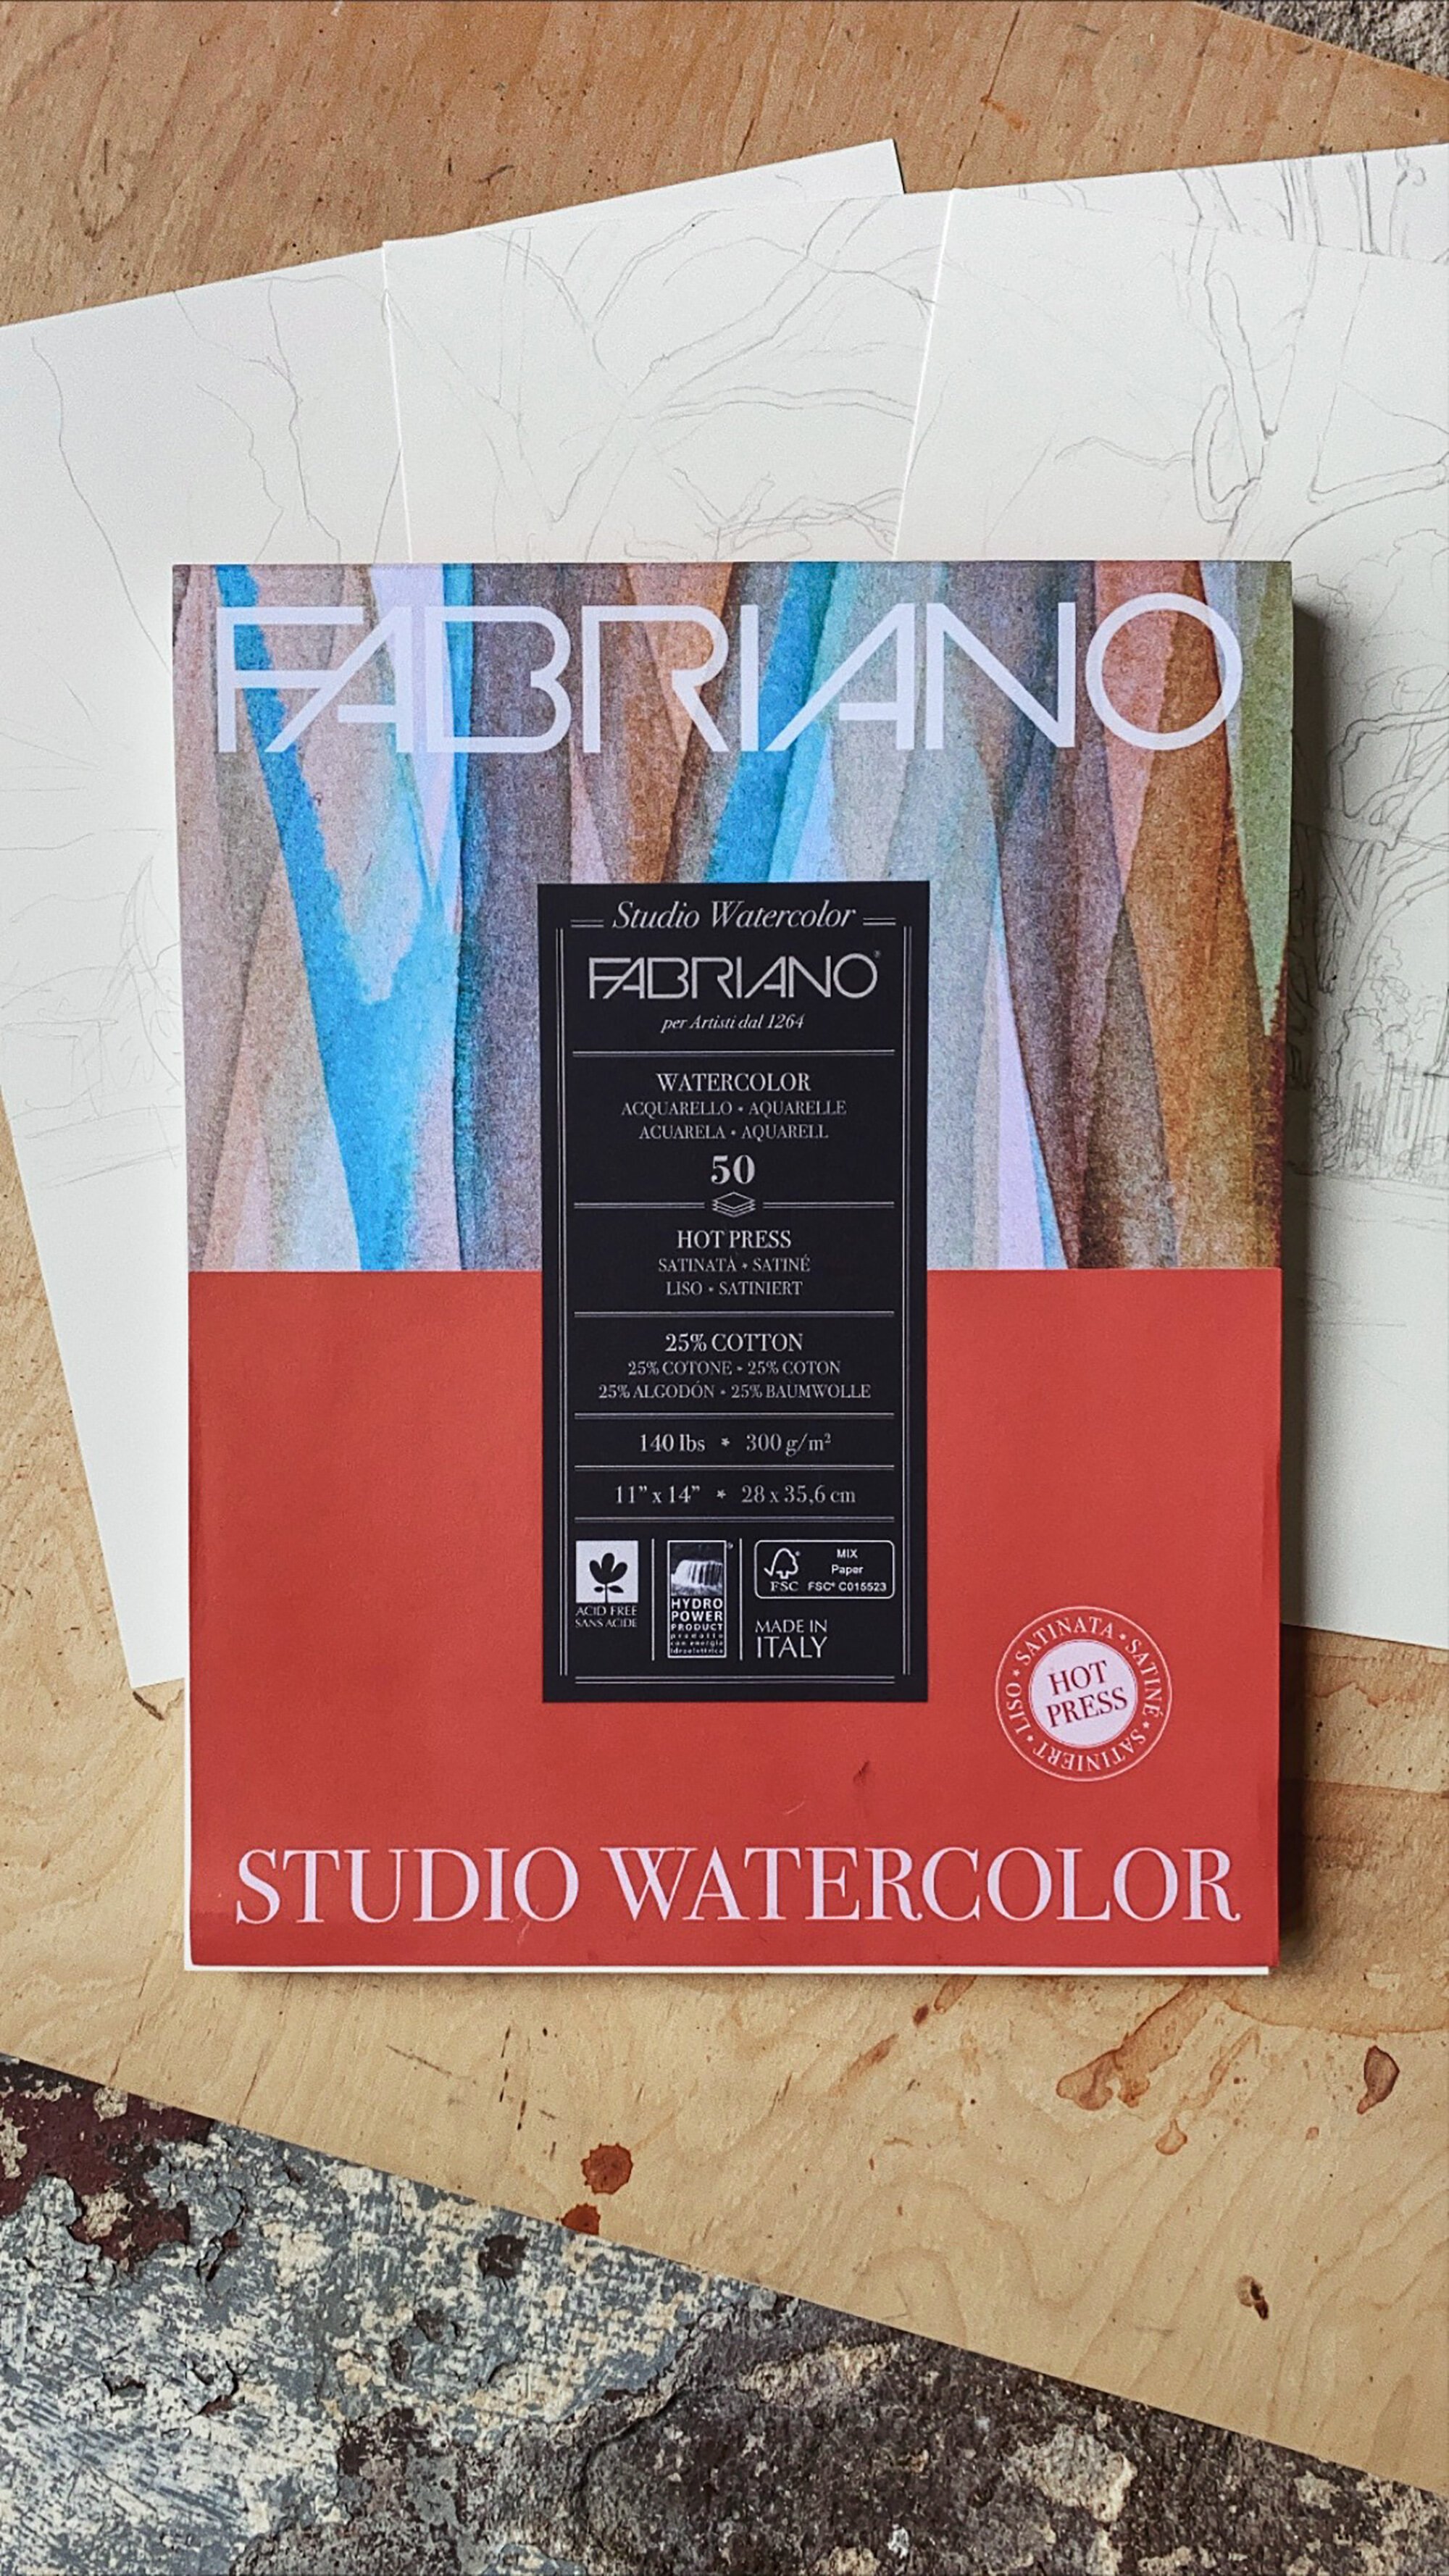 Fabriano Studio Watercolor Pads